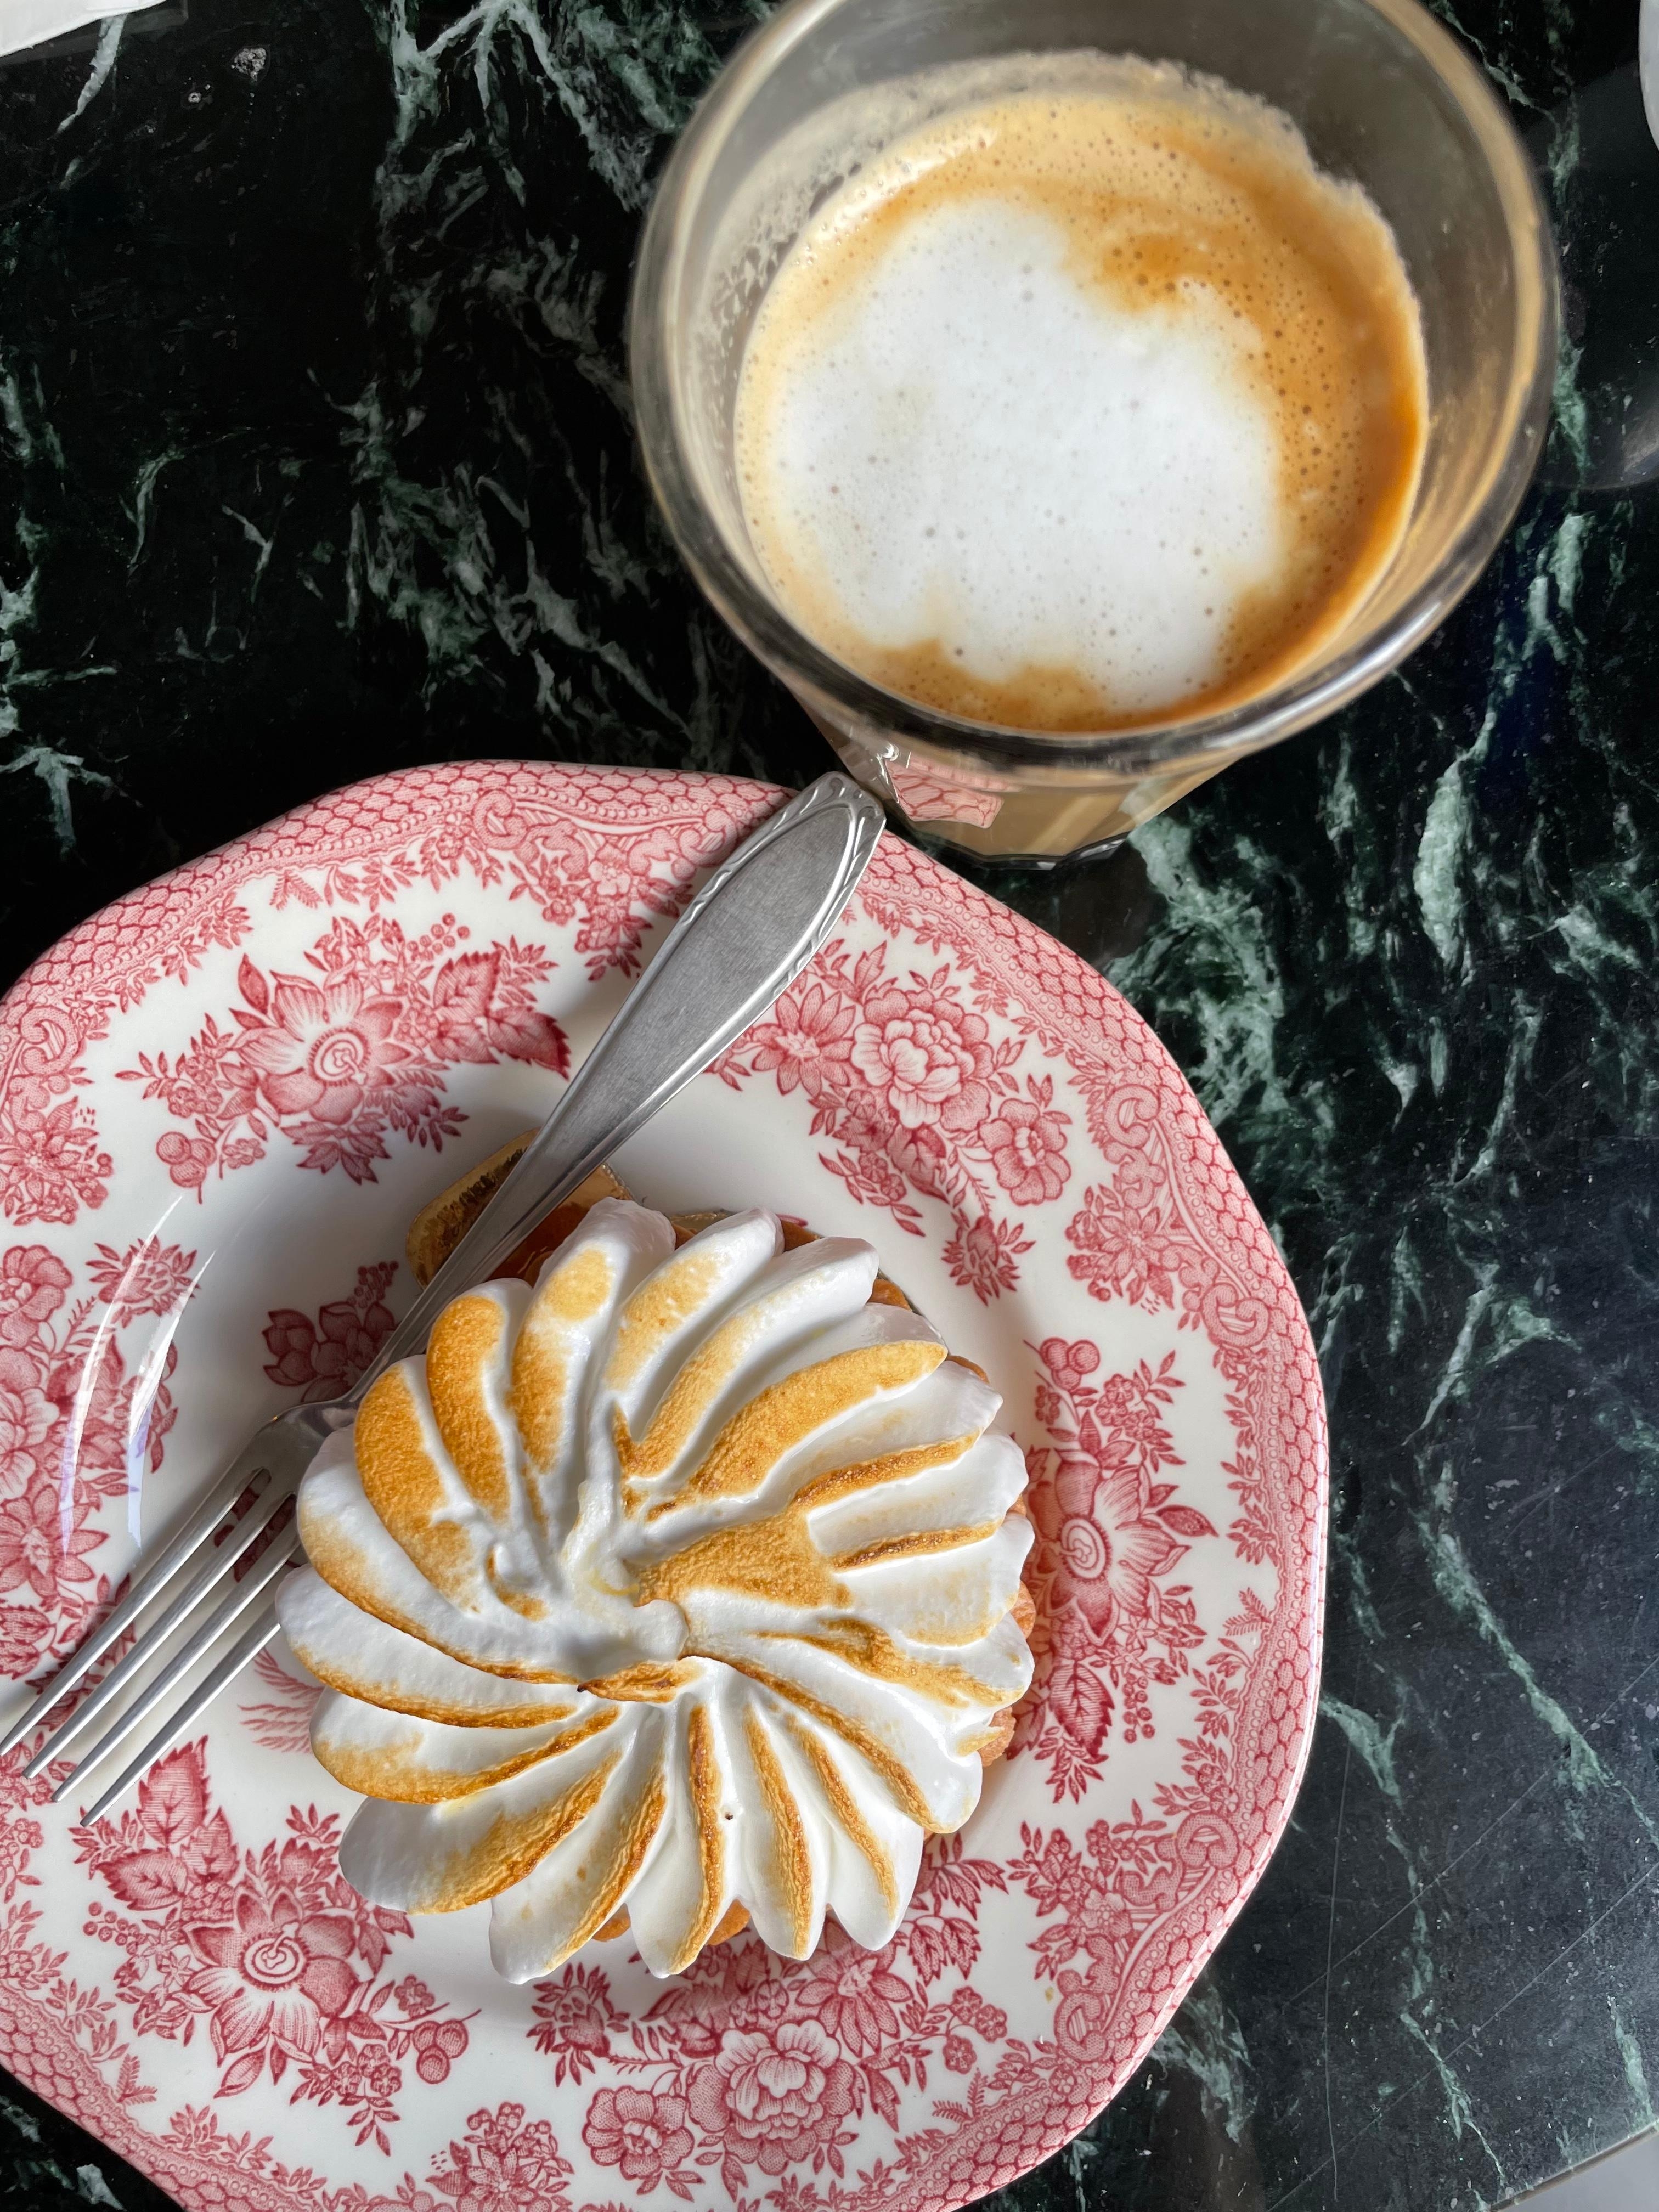 Lieblingsbohne und Tarte au citron 🤍 #Kaffeeliebe #Livingchallenge